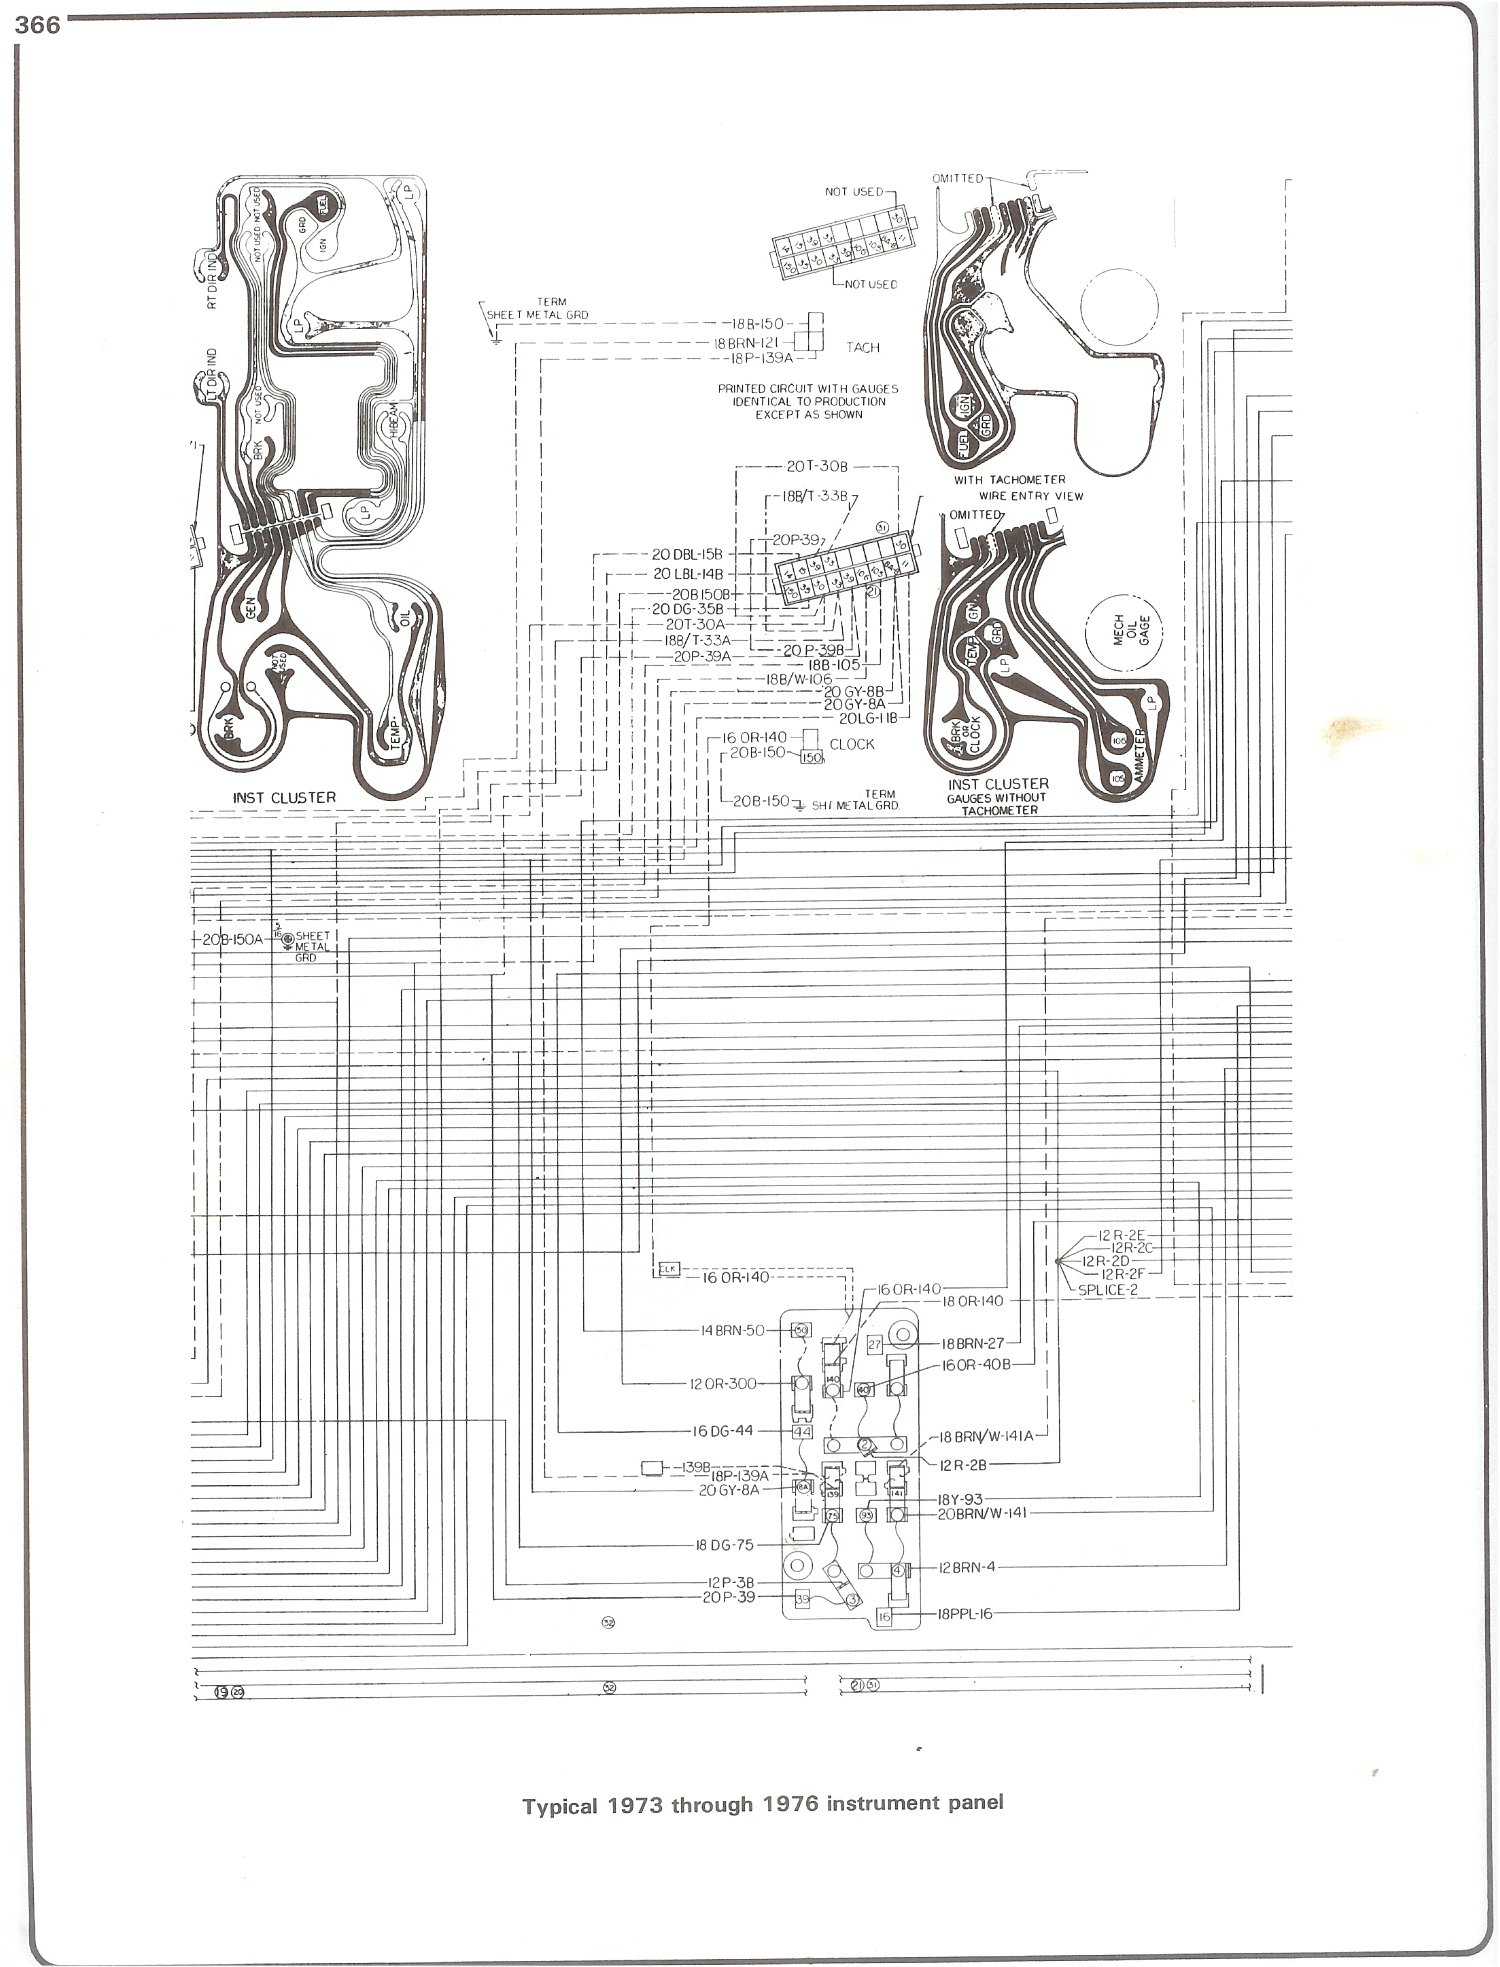 r30-1 plug wiring diagram